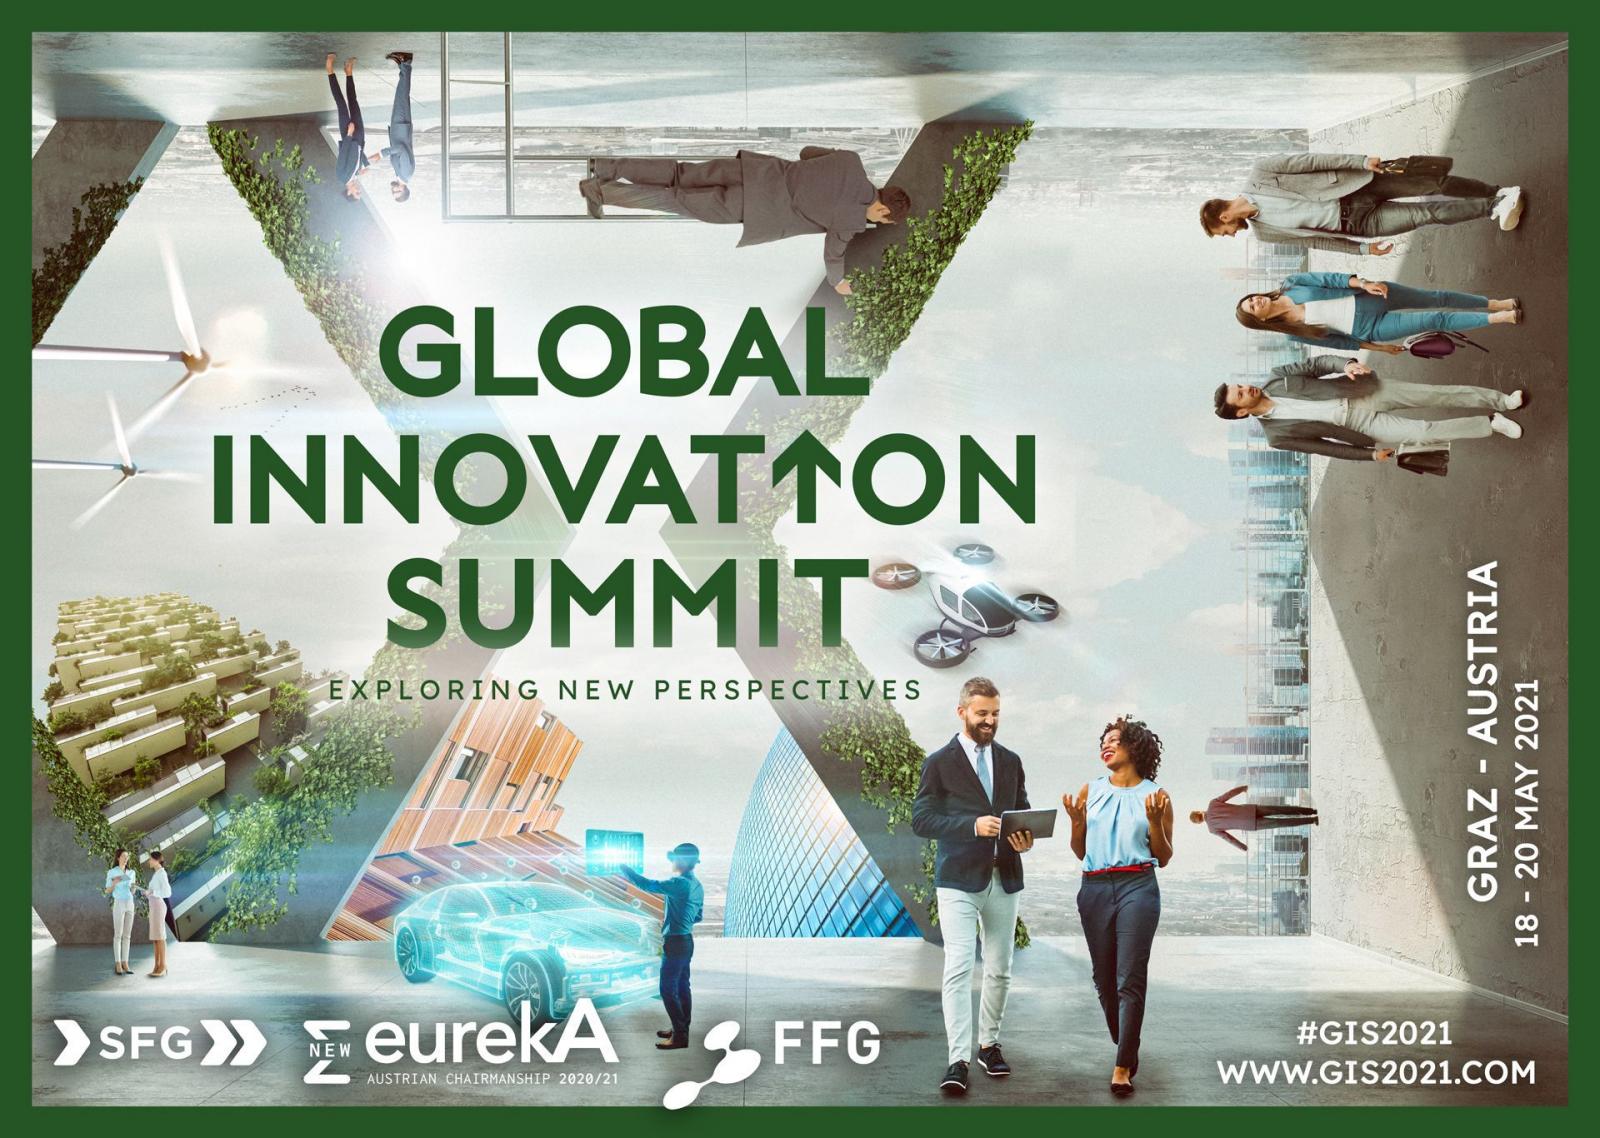 "Werbegrafik für den Global Innovation Summit"